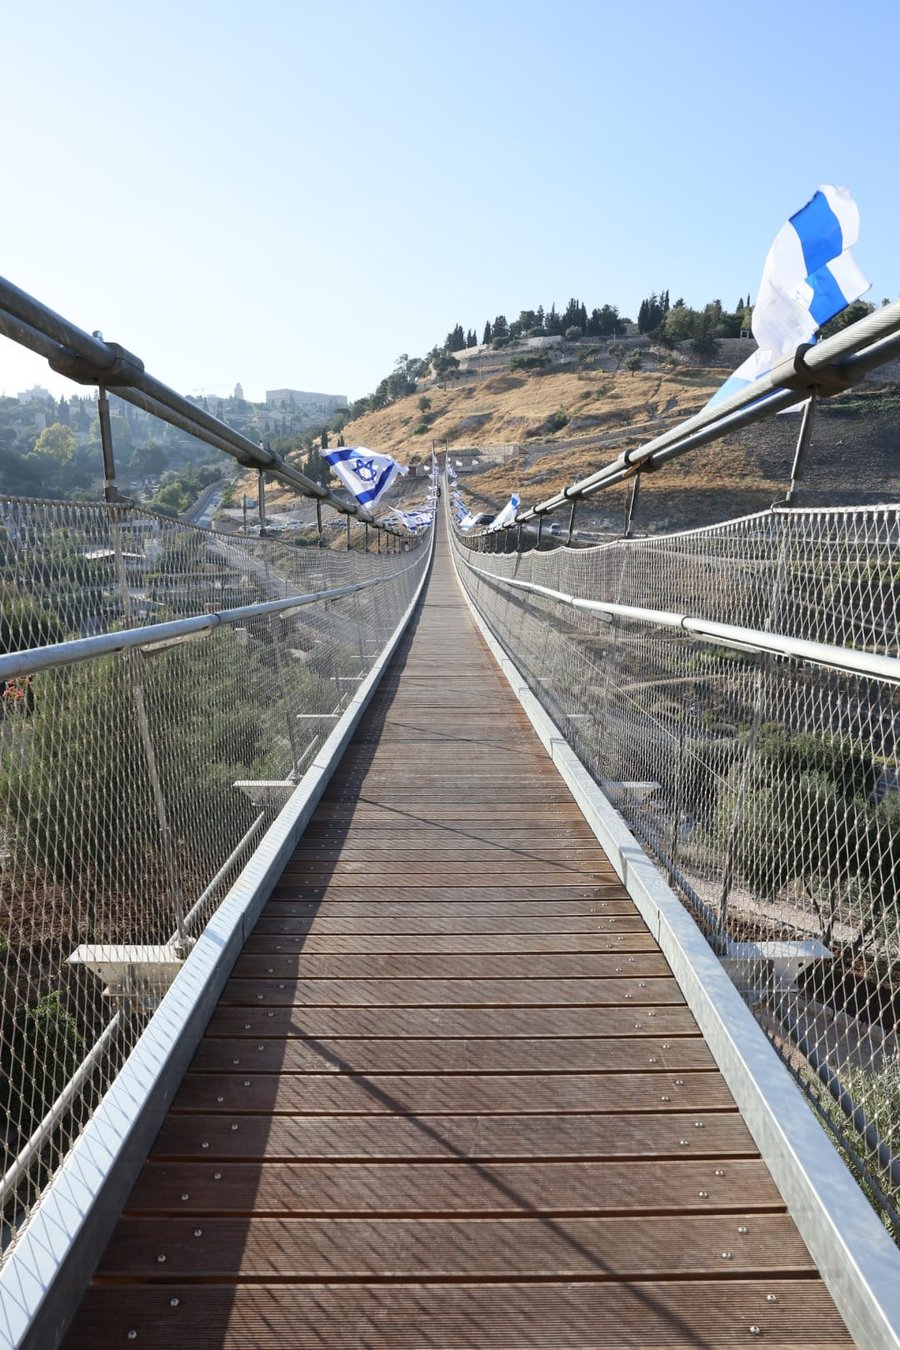 הגשר התלוי הארוך בישראל נפתח בירושלים | צפו בתיעוד